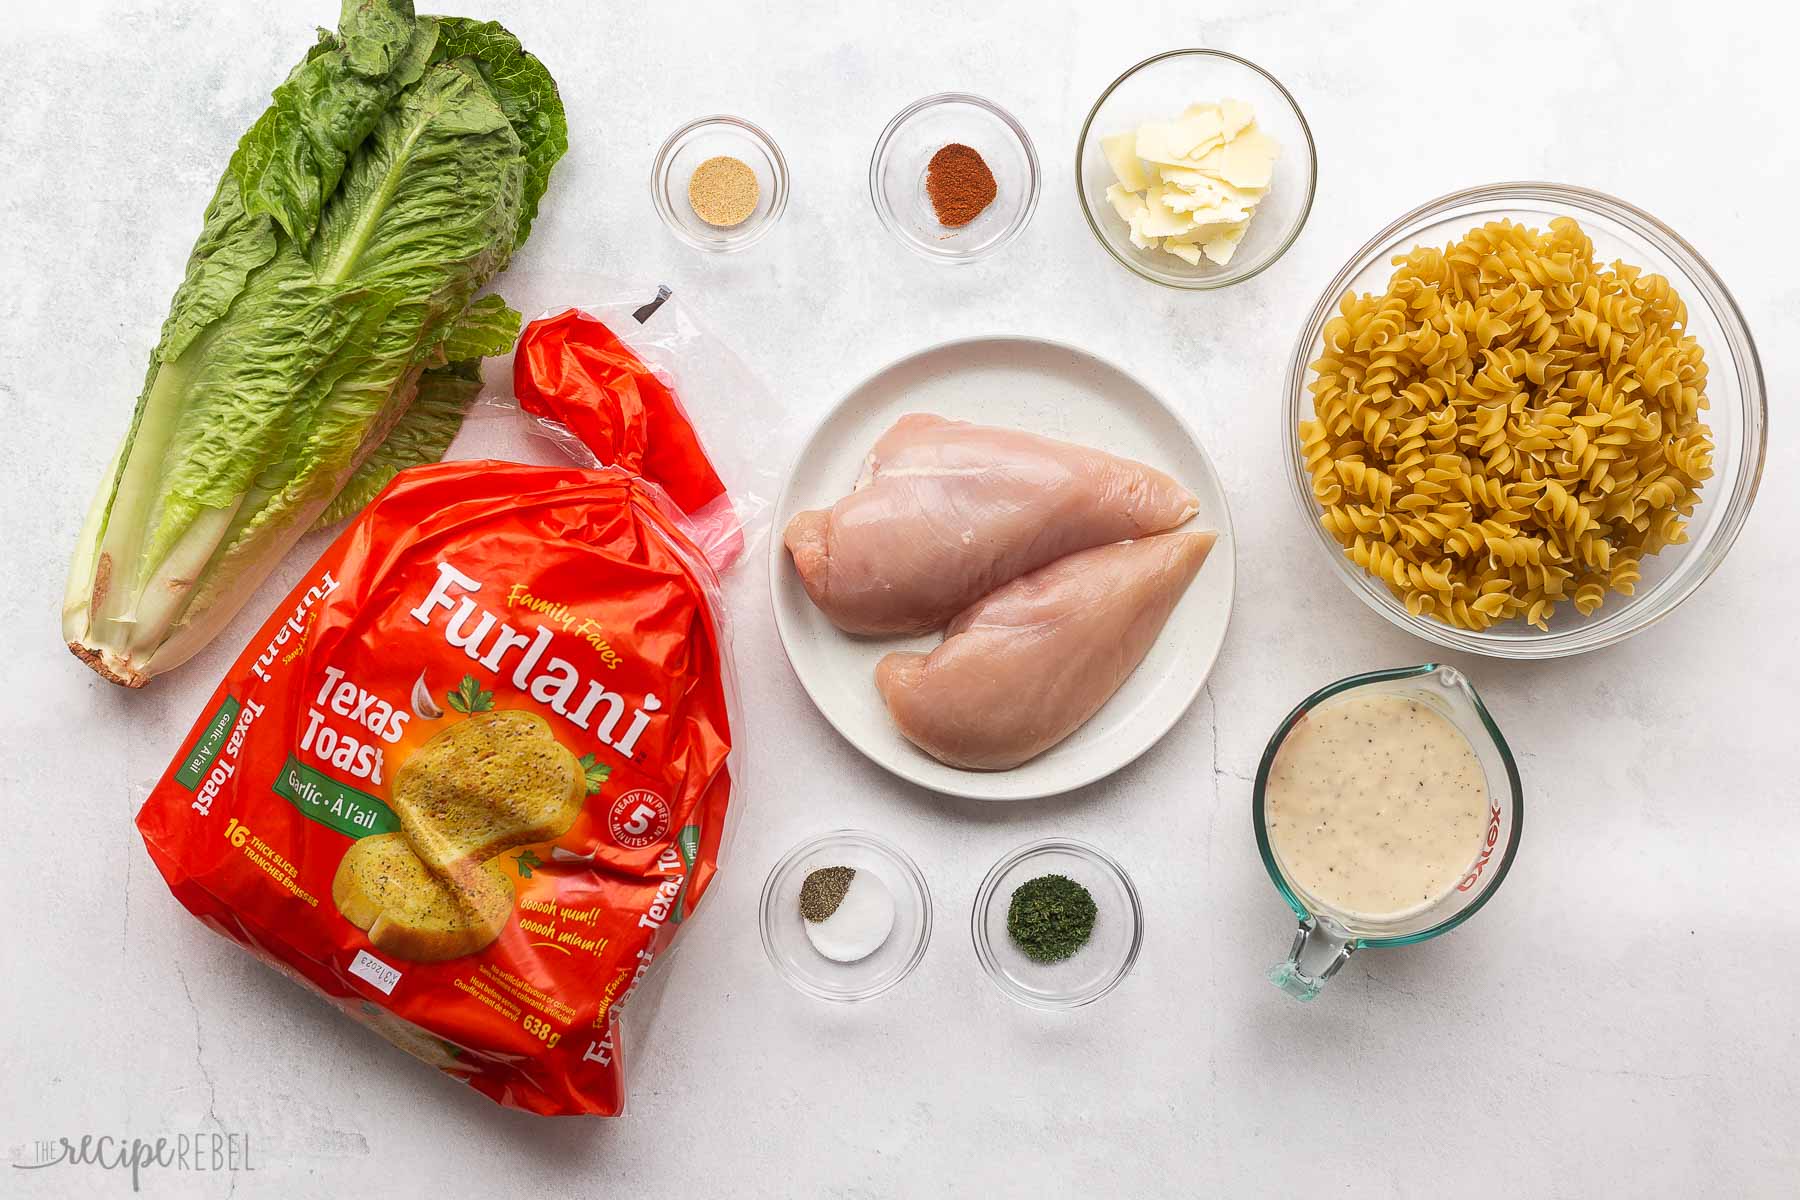 ingredients needed to make chicken caesar pasta salad.
